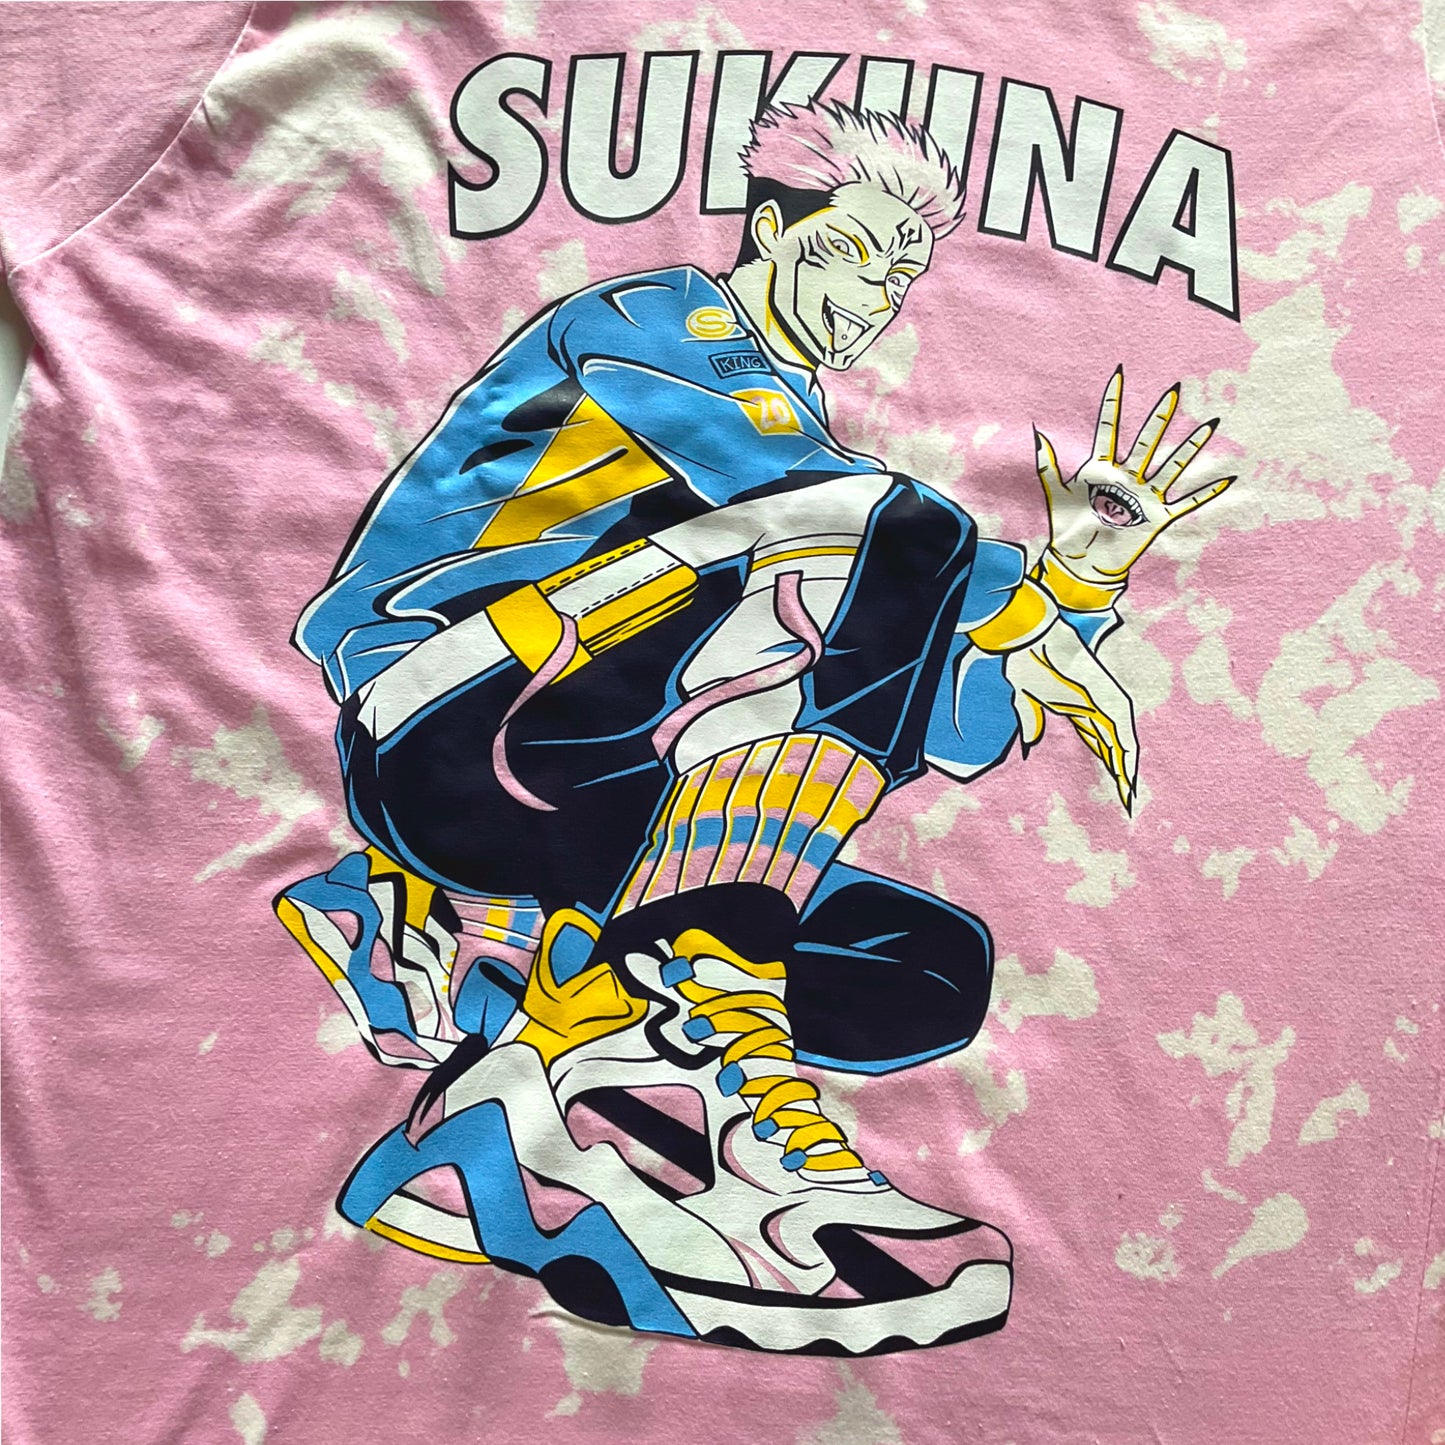 Sukuna Tie-Dye Unisex T-Shirt